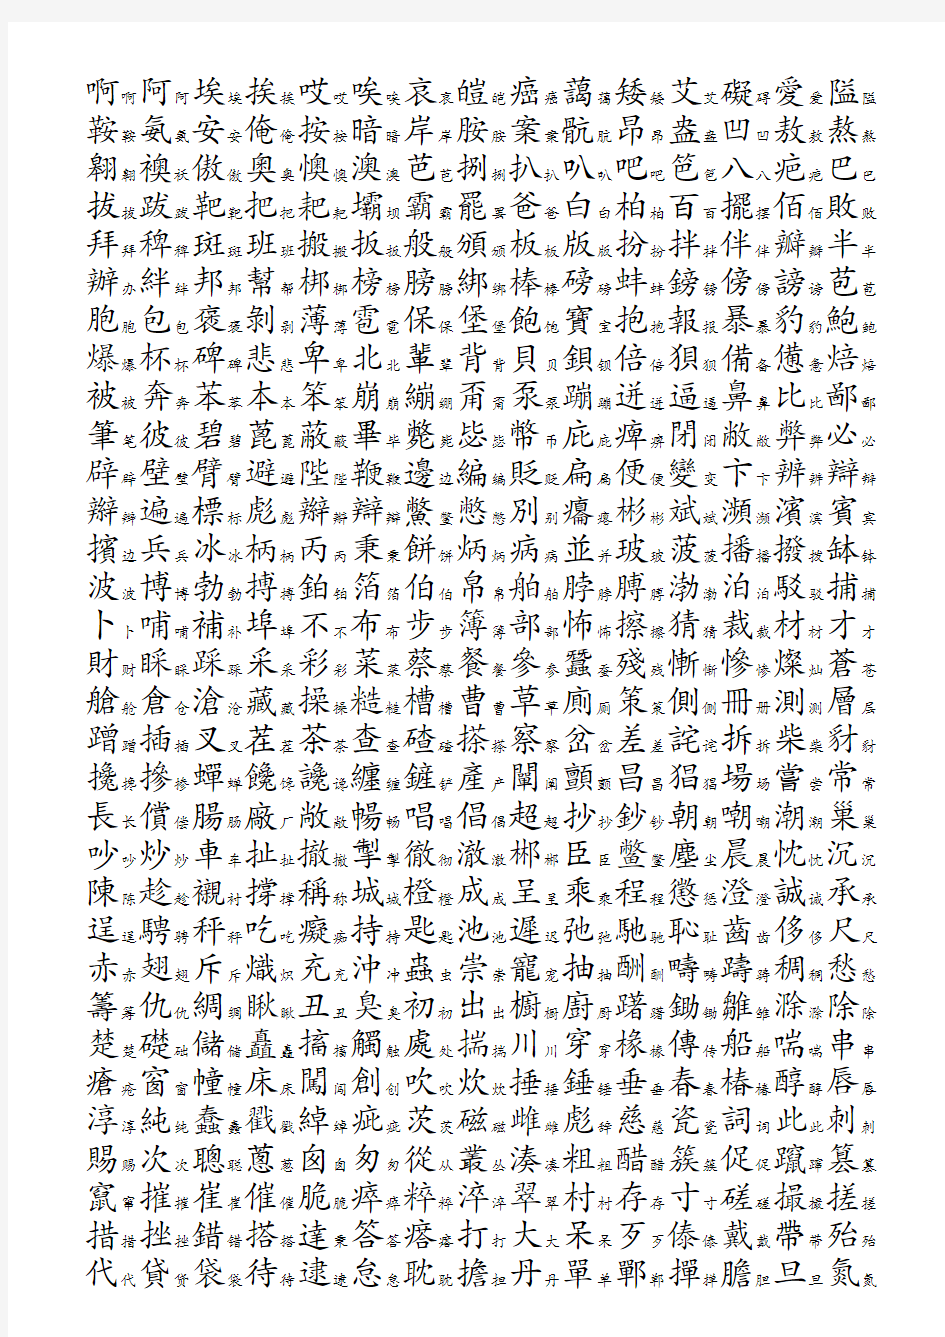 3754个常用汉字简繁对照表-拼音顺序[1][1]